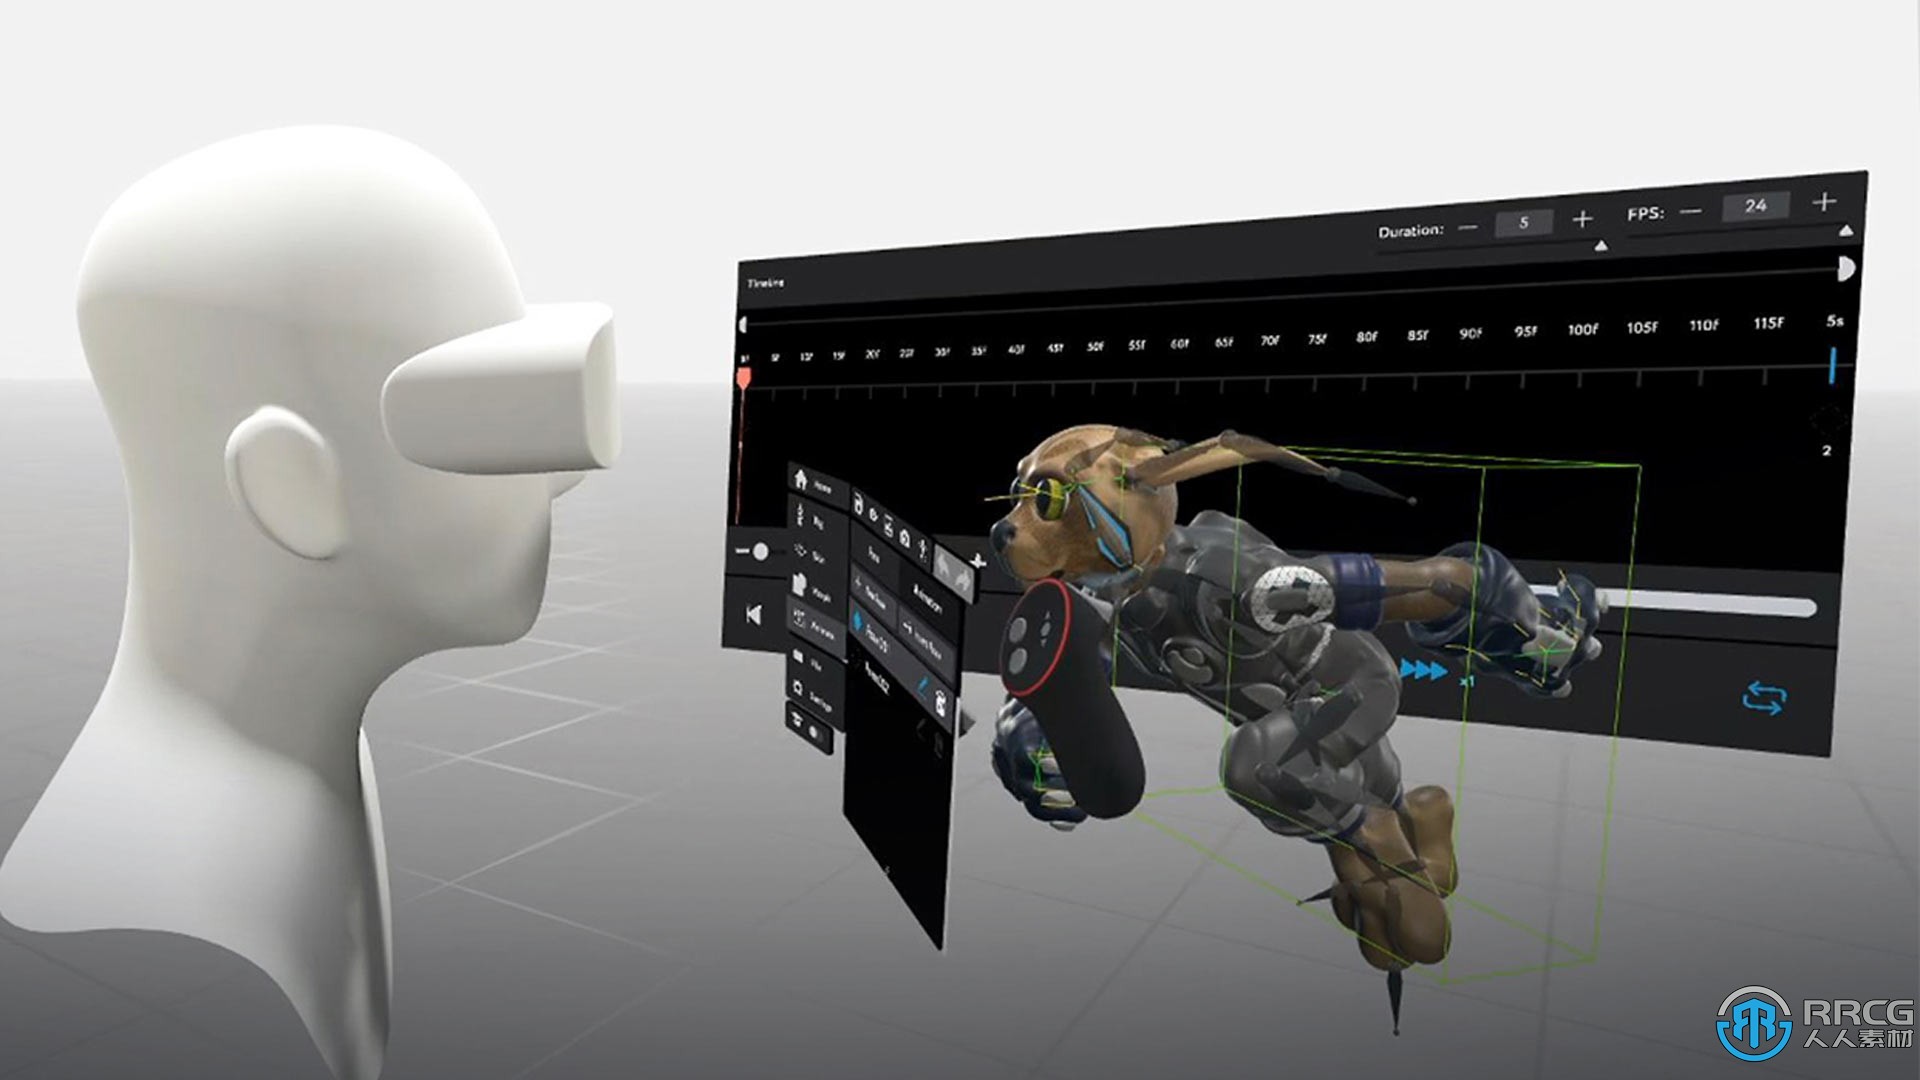 免费获得VR创作软件Masterpiece Studio Pro 可以在虚拟现实中进行雕刻